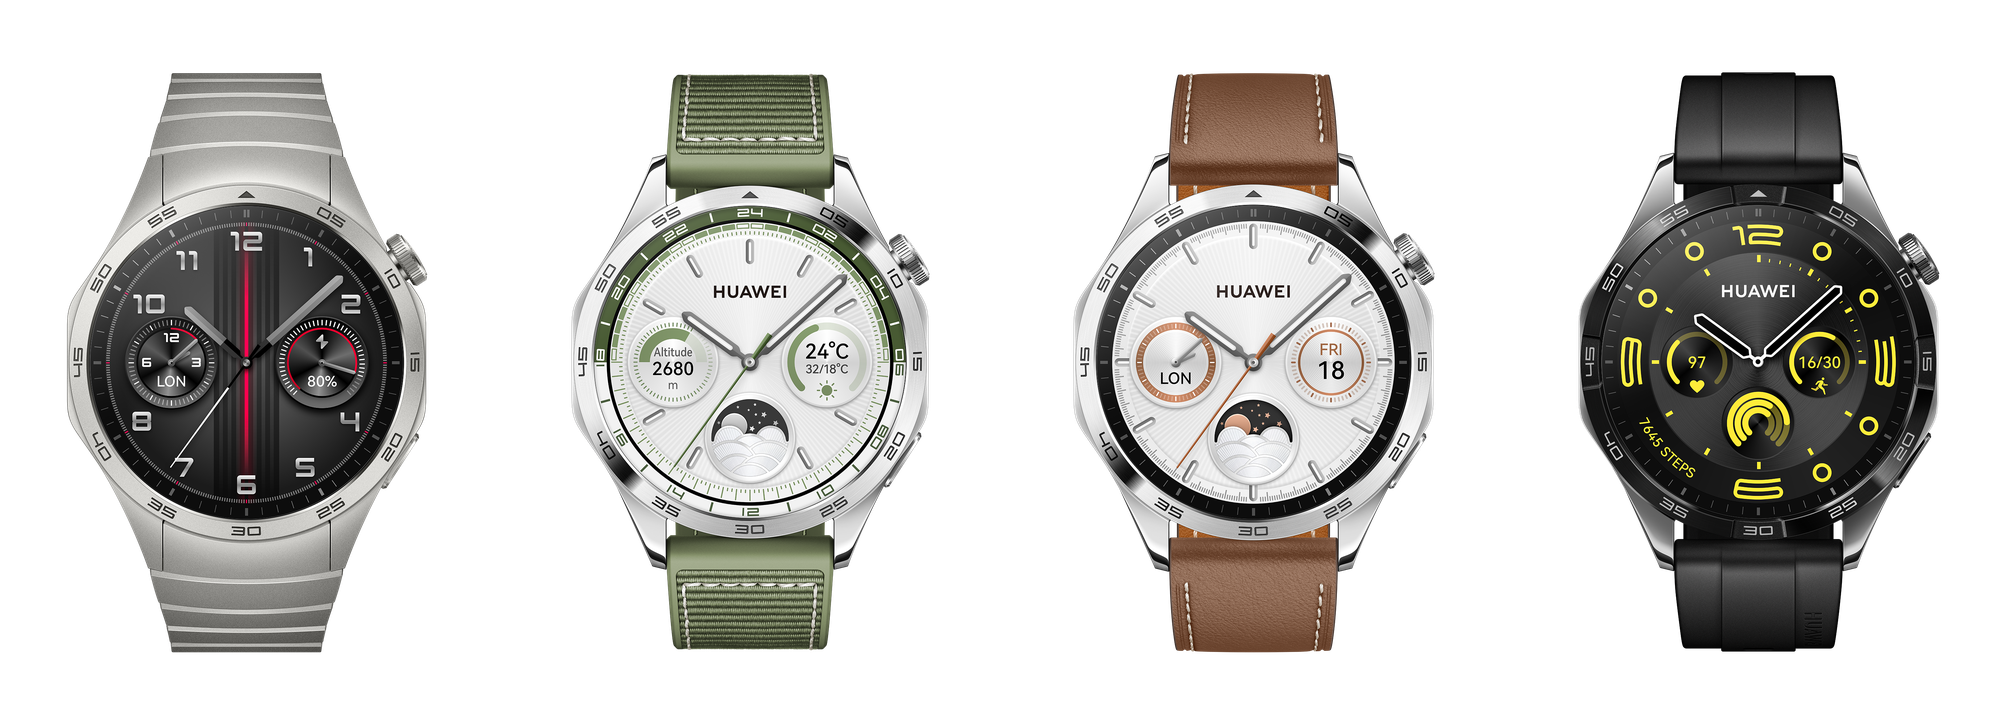 Thế hệ đồng hồ thông minh Huawei Watch GT 4 chính thức mở bán - Ảnh 1.